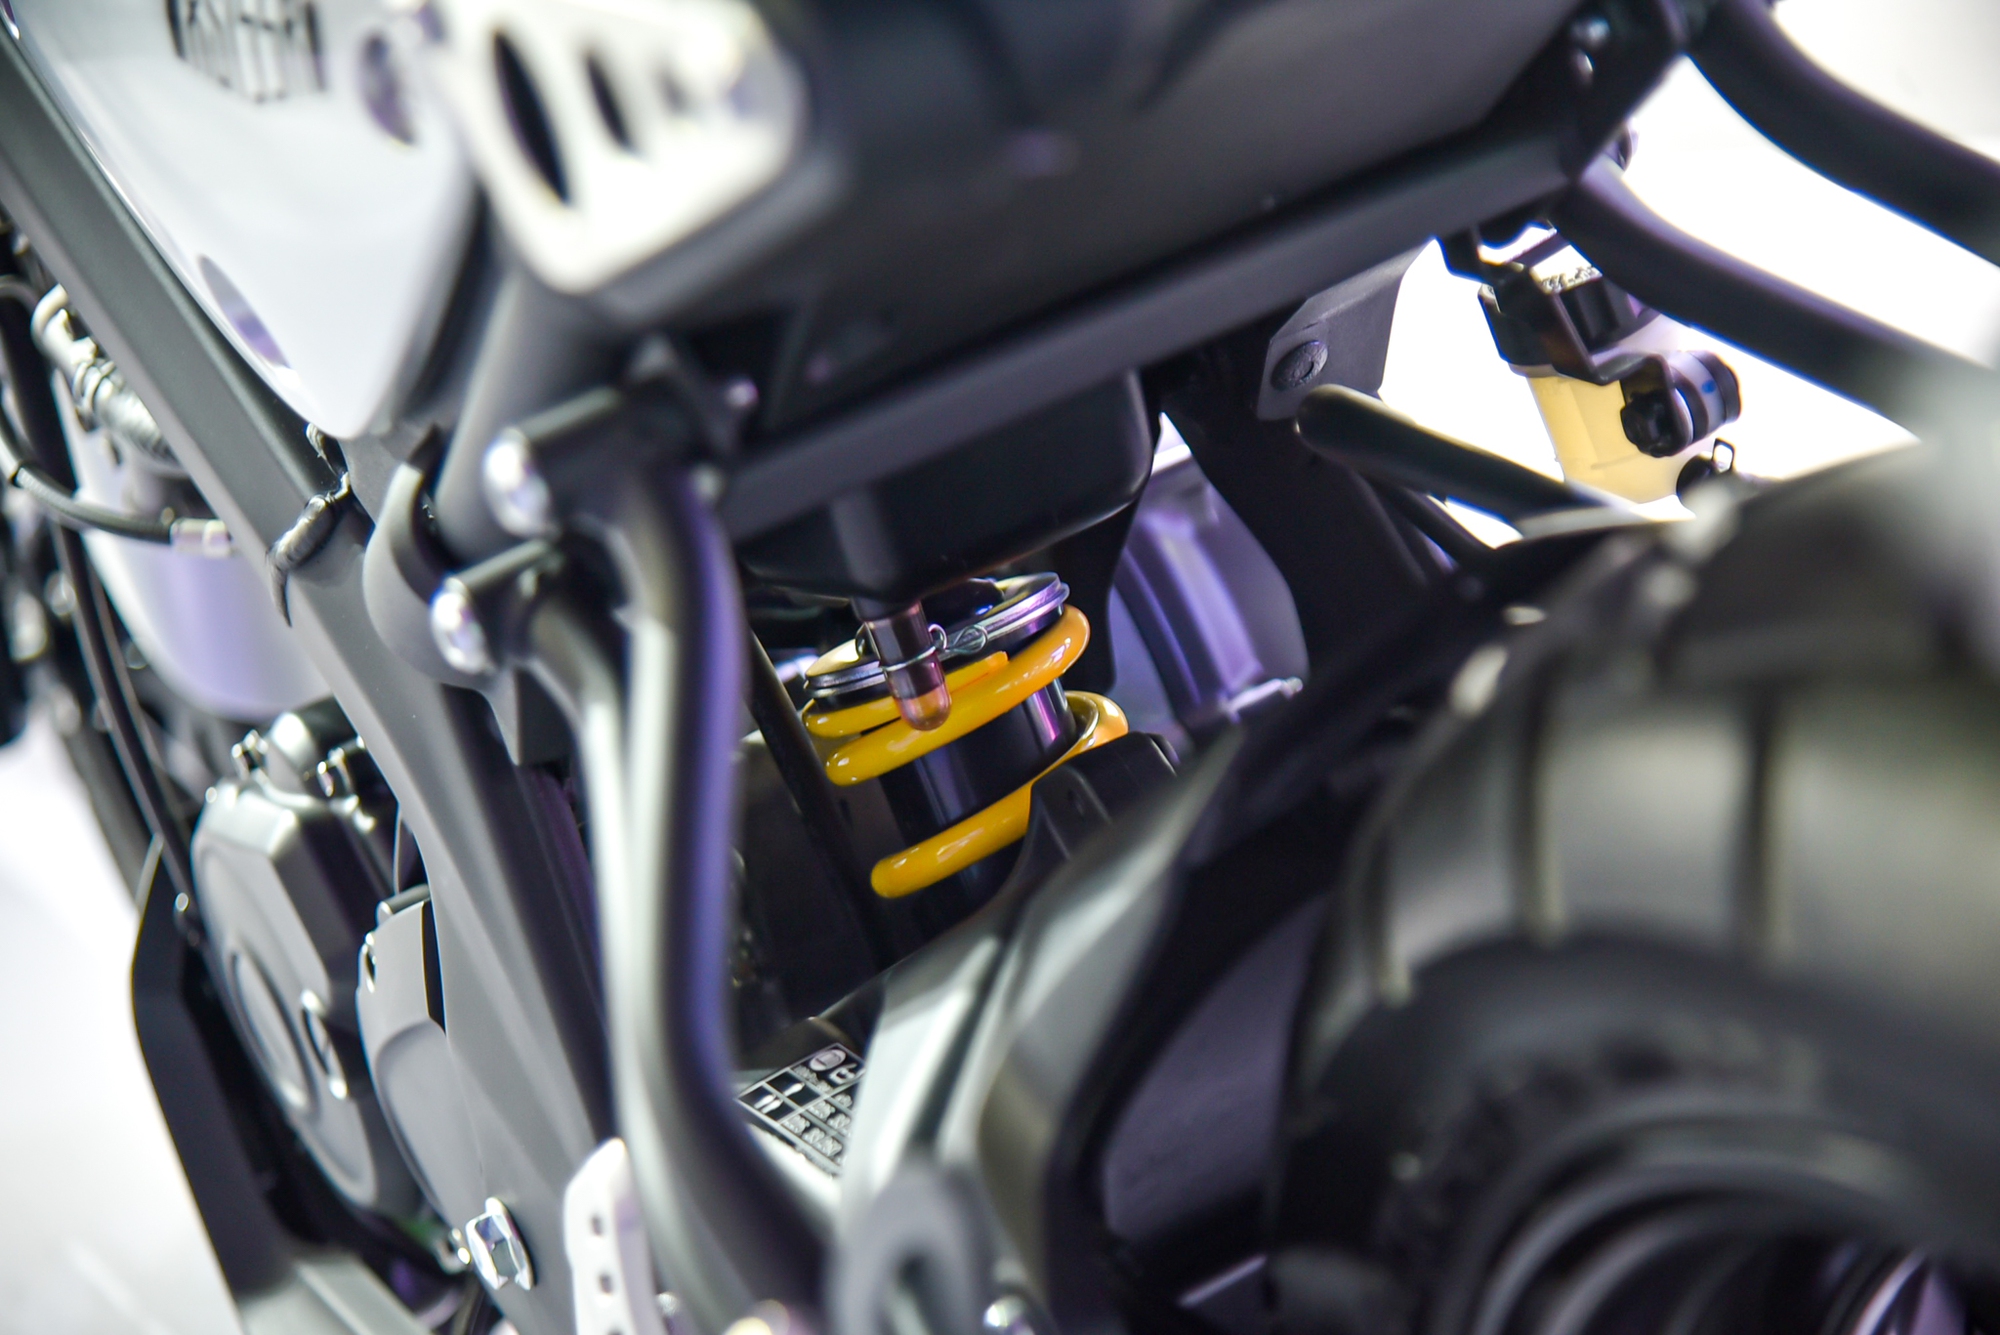 Yamaha XS155R chính hãng chào sân thị trường Việt: Giá bán 77 triệu đồng, thách thức Honda CB150R - Ảnh 6.